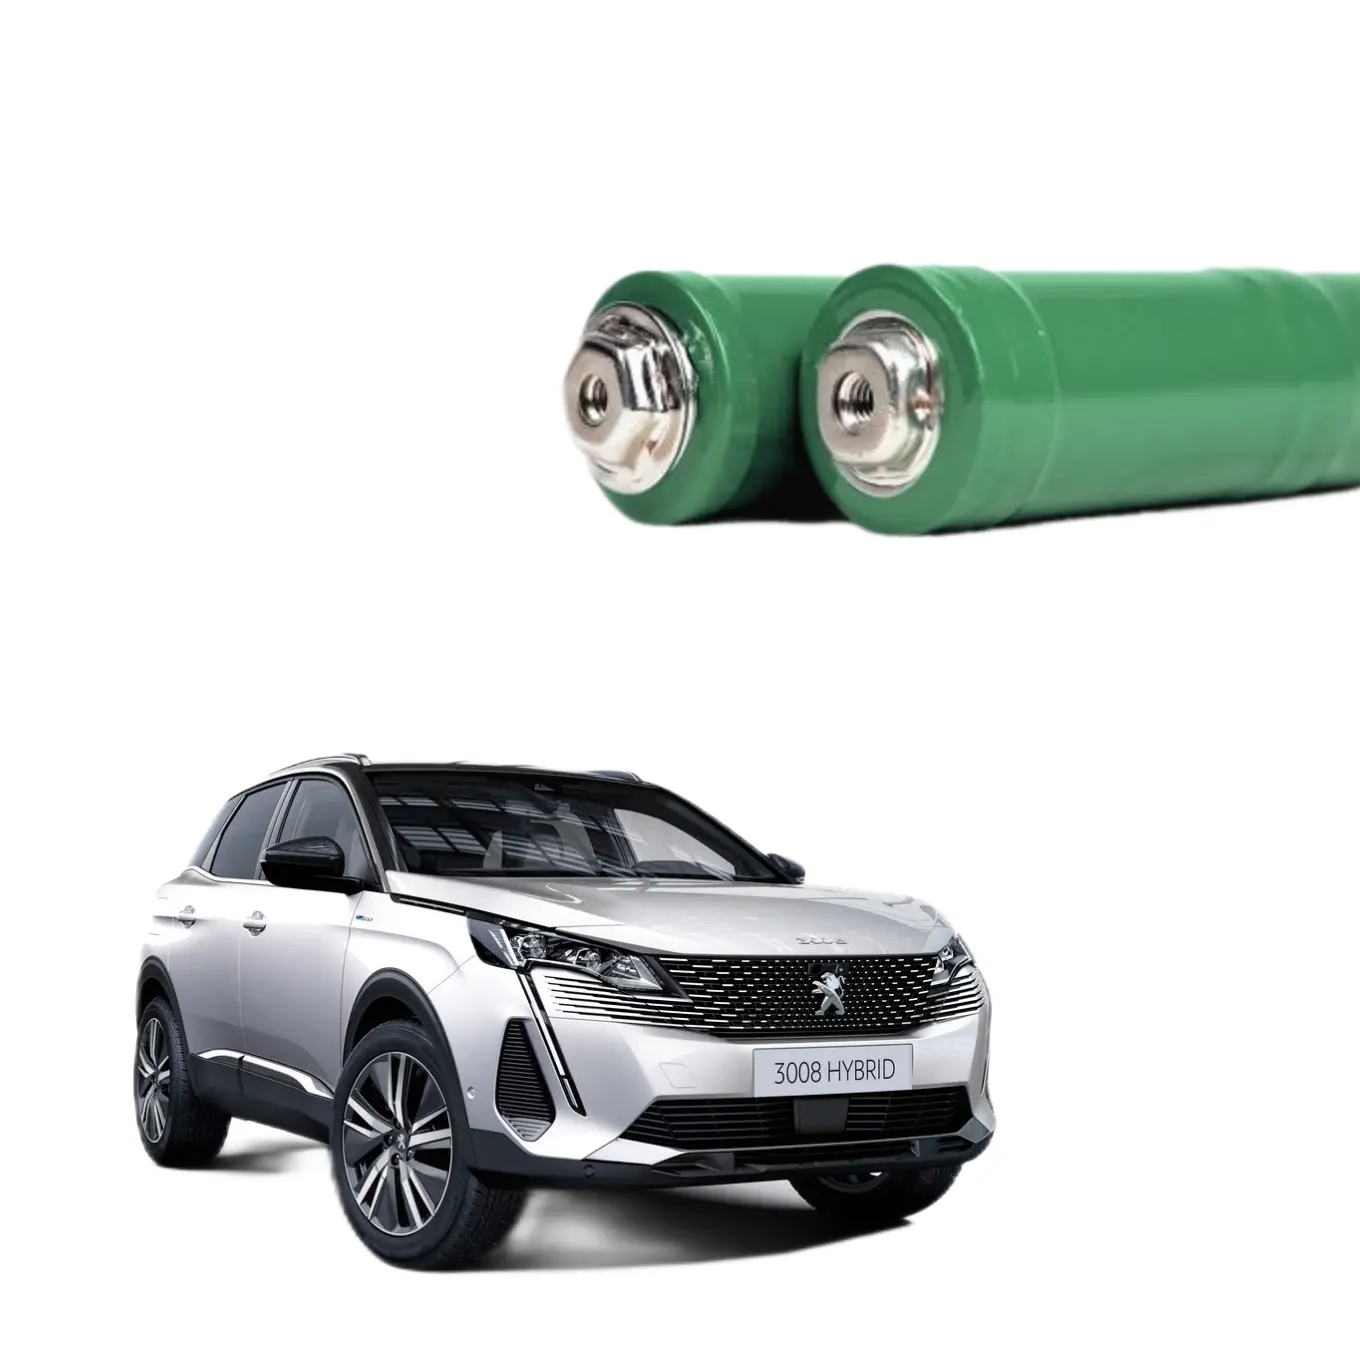 Fabbrica 201.6V 6.5Ah ni-mh batteria ibrida cilindrica per auto per Peugeot 508 2012 2013 2014 2015 2016